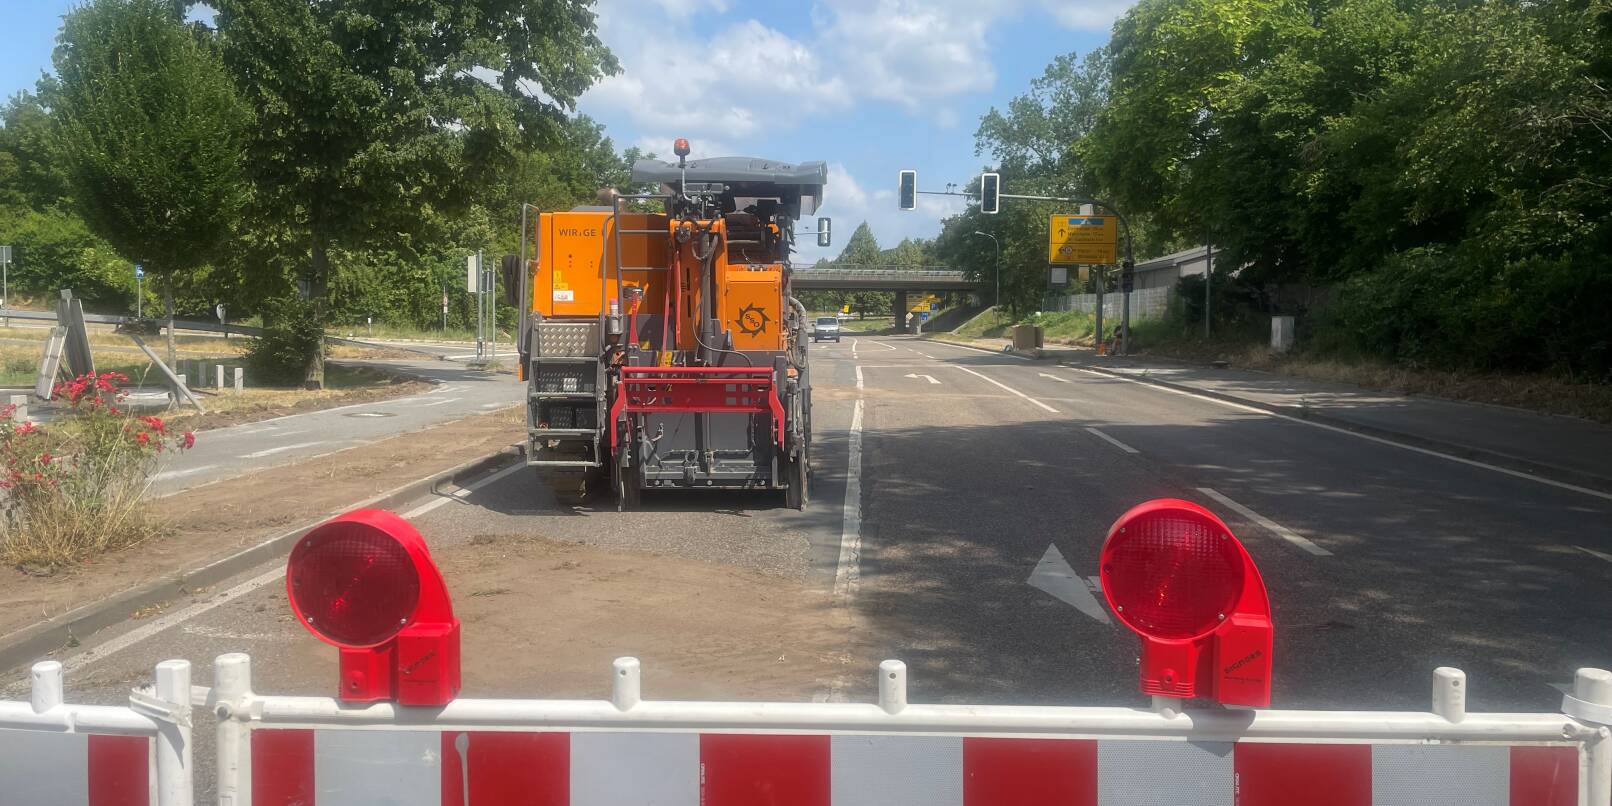 Bis zum 7. Juli ist die B 3 zwischen dem Kreisverkehr zum Gewerbegebiet Nord und dem Abzweig nach Sulzbach/Hemsbach voll gesperrt (Bild). Ende August beginnen dann Arbeiten auf der B38 zwischen Autobahnkreuz und der "Automeile" Viernheimer Straße.